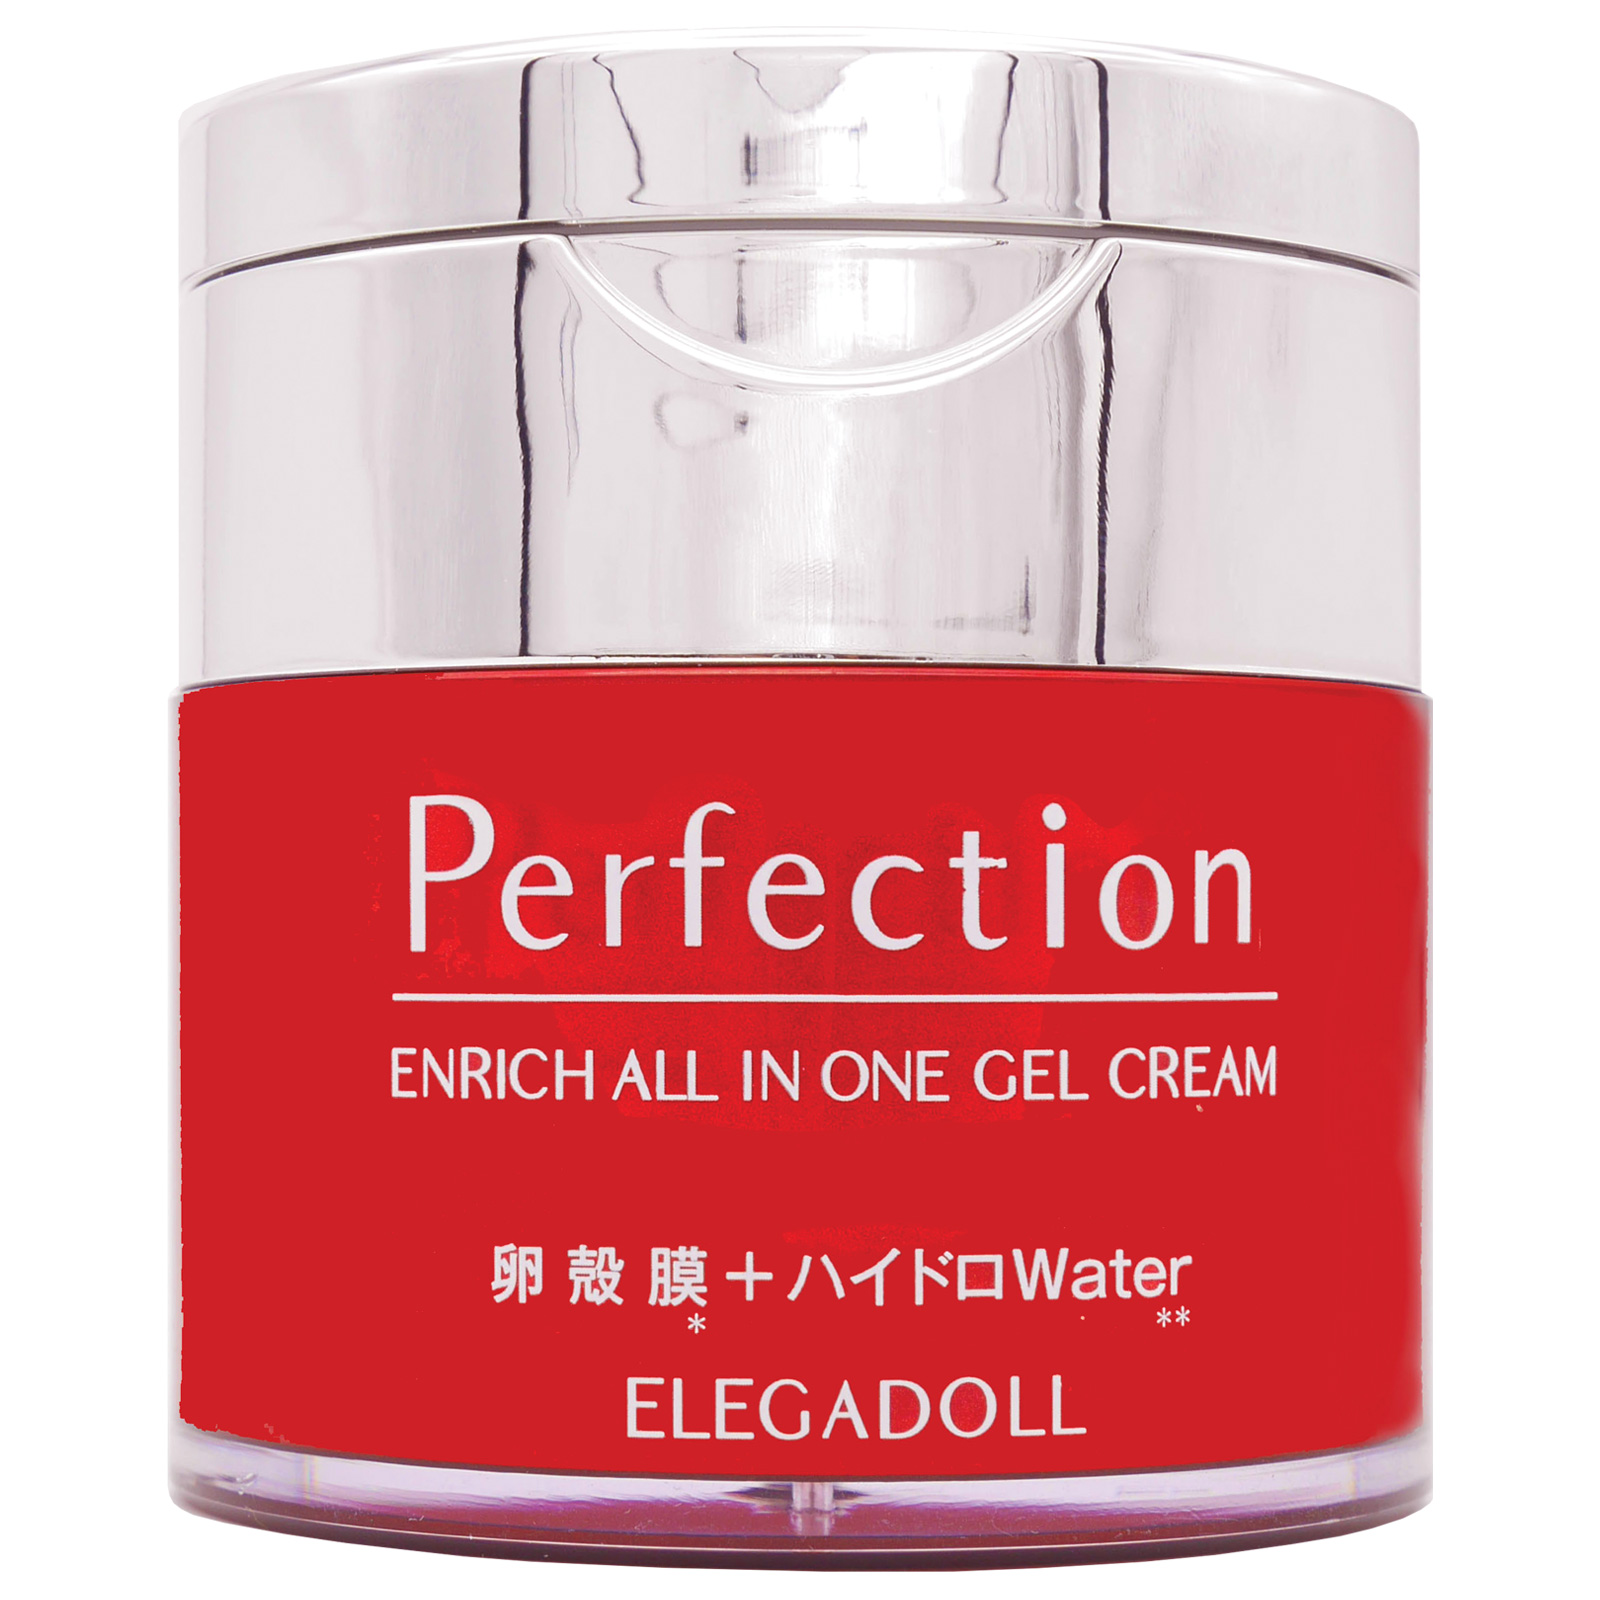 Elega Doll Perfection Enrich All In One Gel Cream. Ультрапитательный крем-гель для лица Элега Долл «Все в одном», 50 г